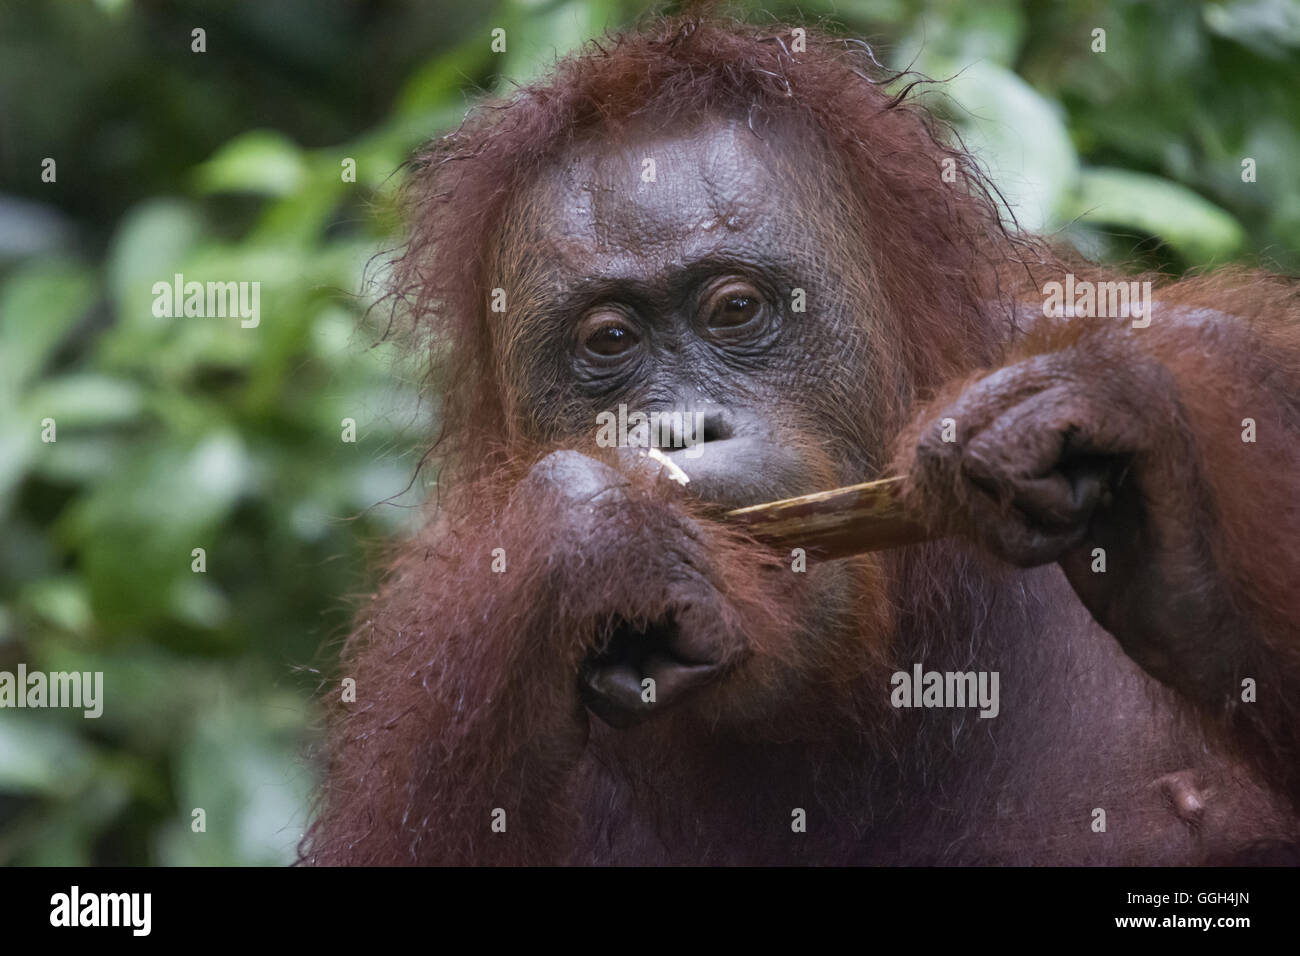 L'orang-outan, Bornéo, Indonésie. Originaire d'Indonésie et Malaisie, les orangs-outans sont actuellement trouvés dans les forêts tropicales humides de Bornéo Banque D'Images